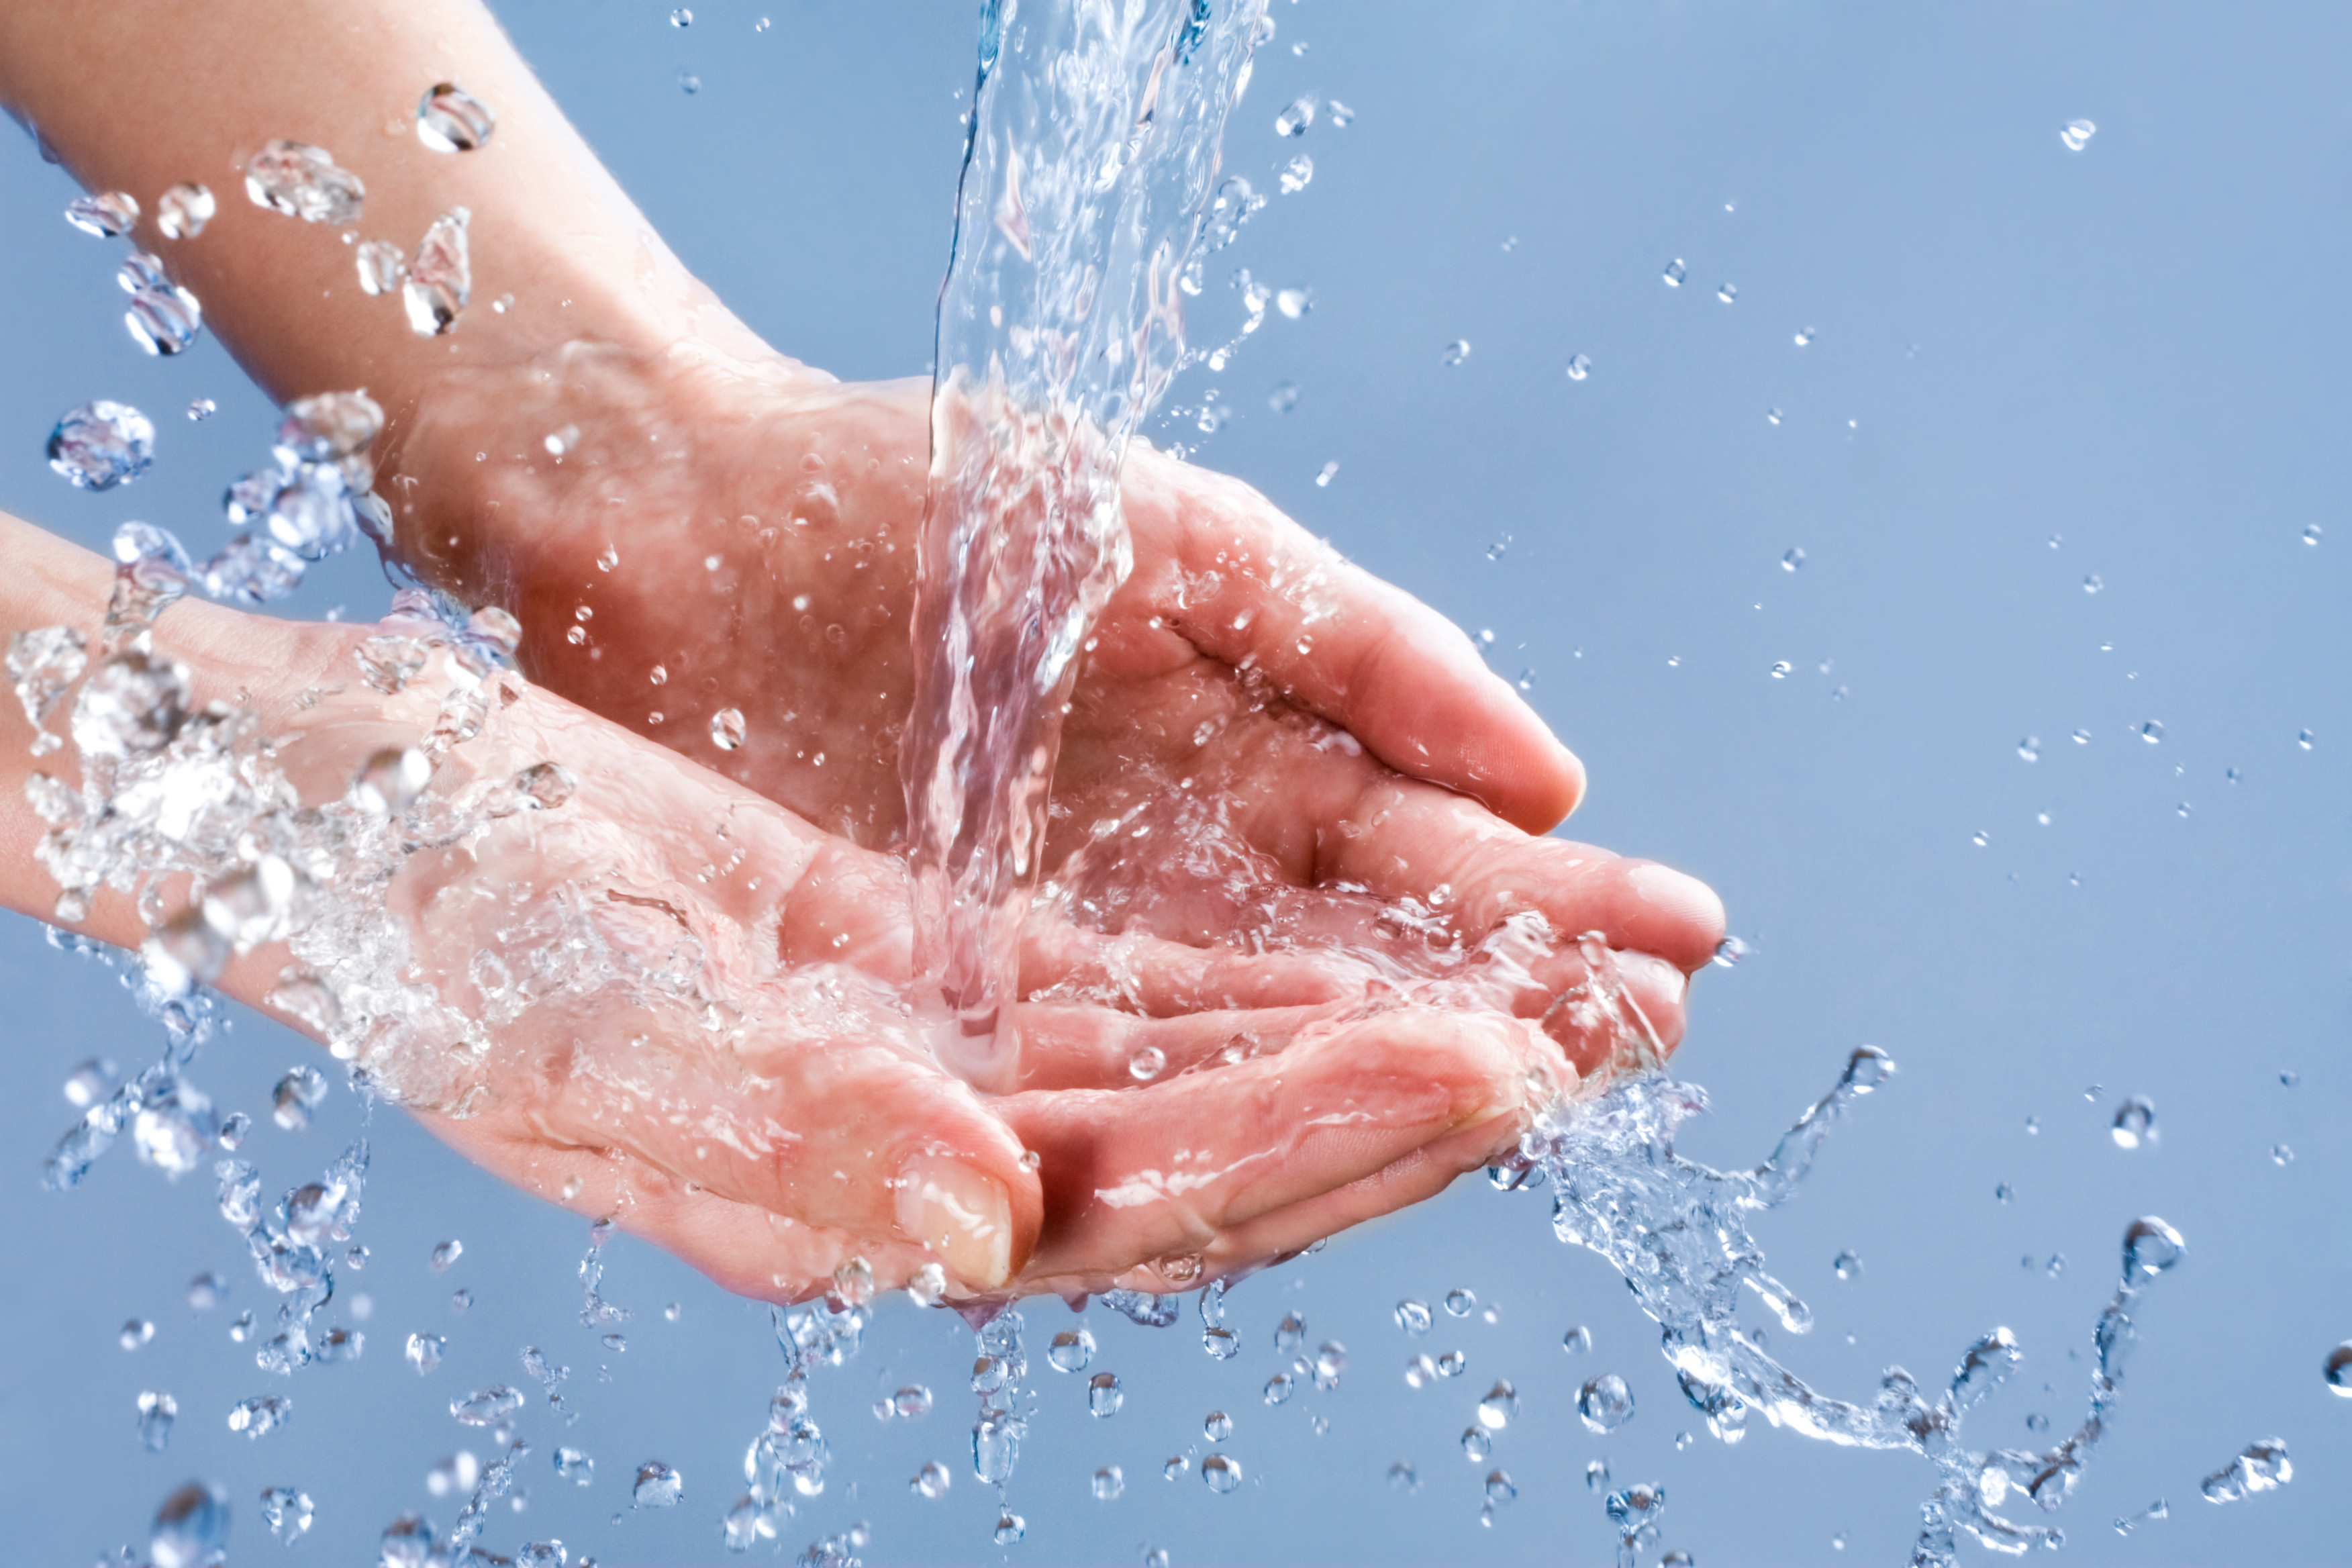 Правила гигиены воды. Чистые руки. Гигиена рук. Мытье рук. Вода в руках.